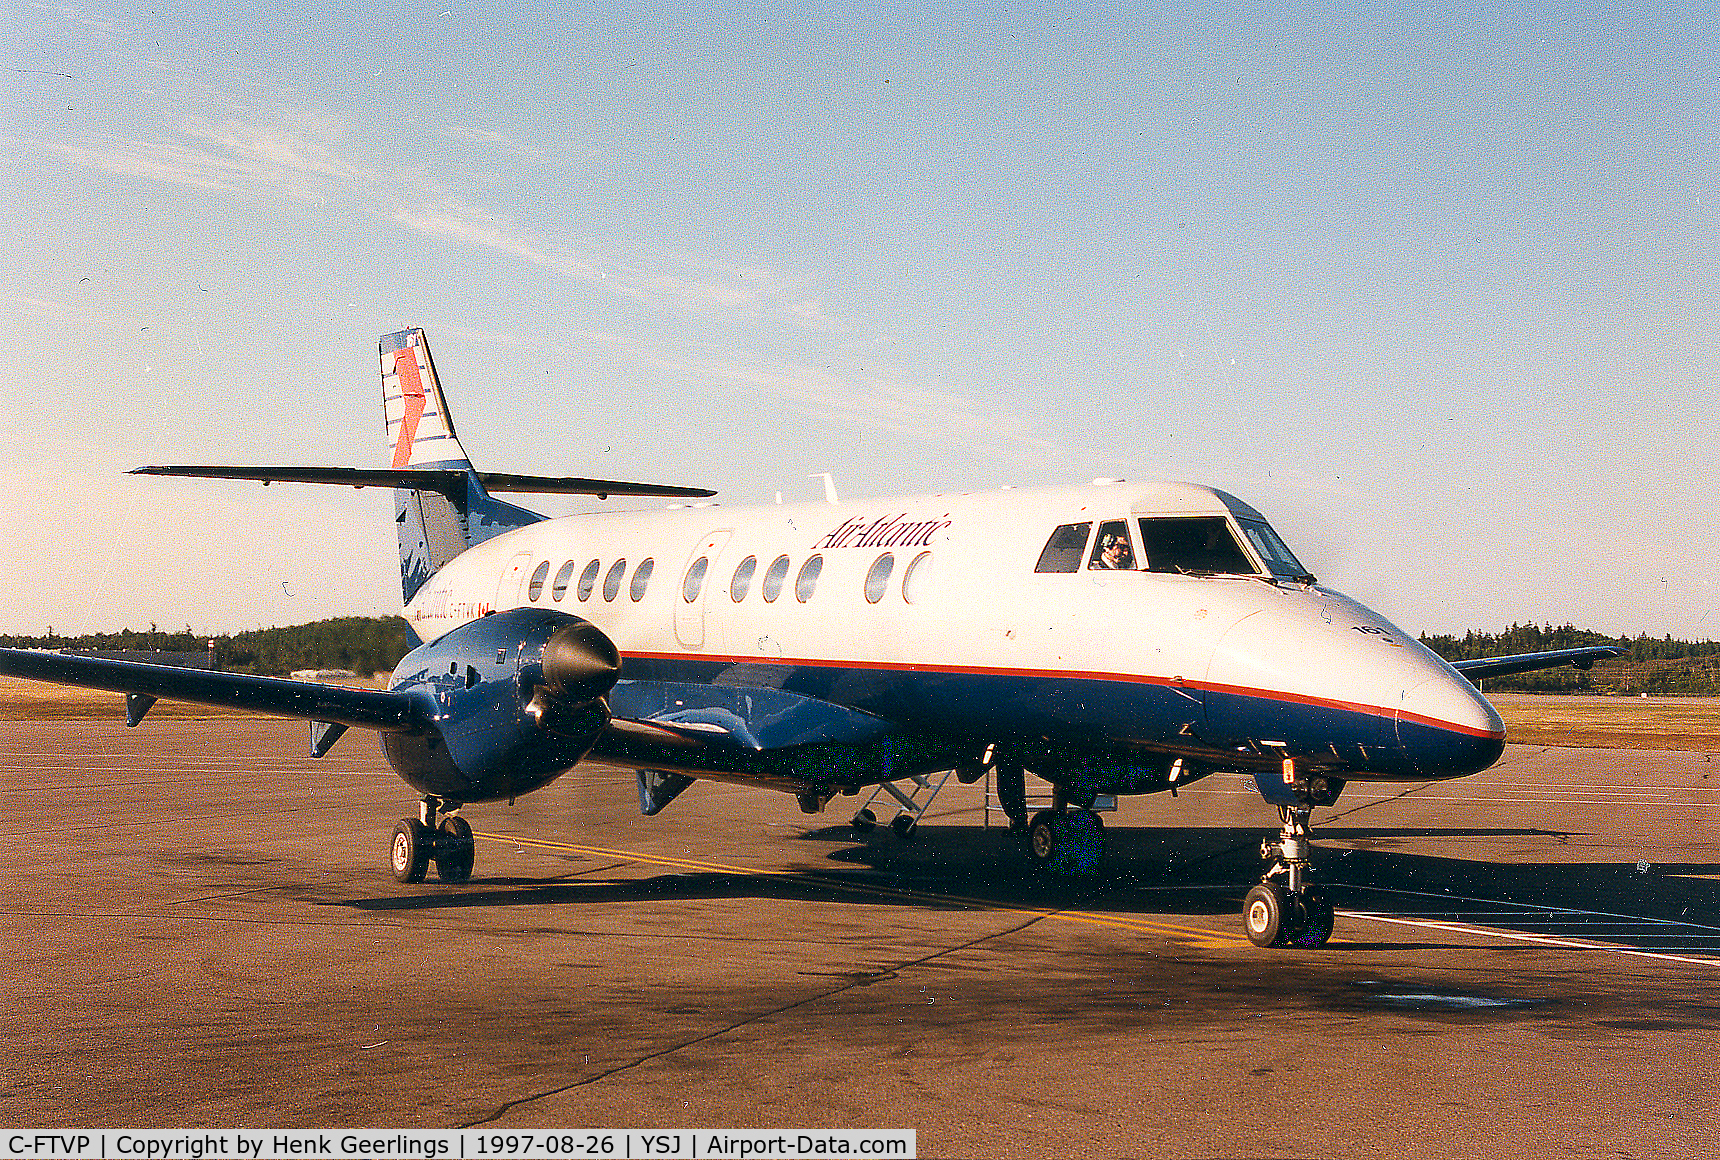 C-FTVP, 1995 British Aerospace Jetstream 41 C/N 41053, Air Atlantic